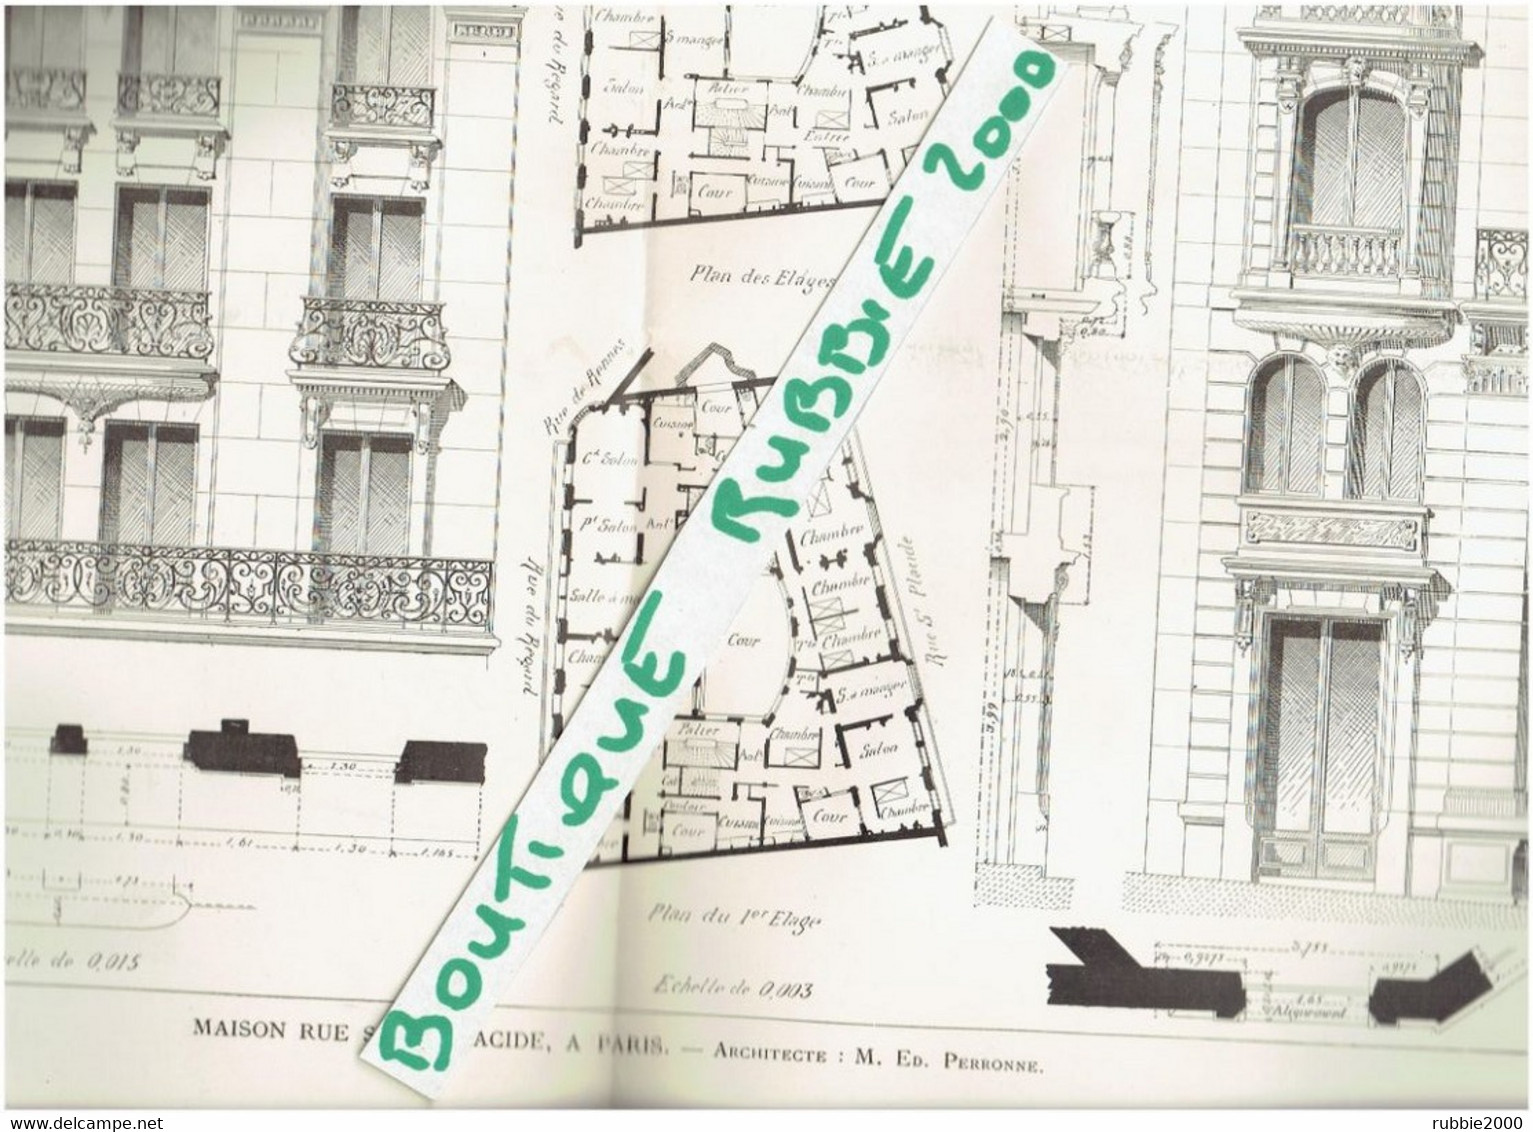 3 PLANS DESSINS 1898 PARIS 6° IMMEUBLE 55 RUE SAINT PLACIDE ARCHITECTE PERRONNE - Parijs